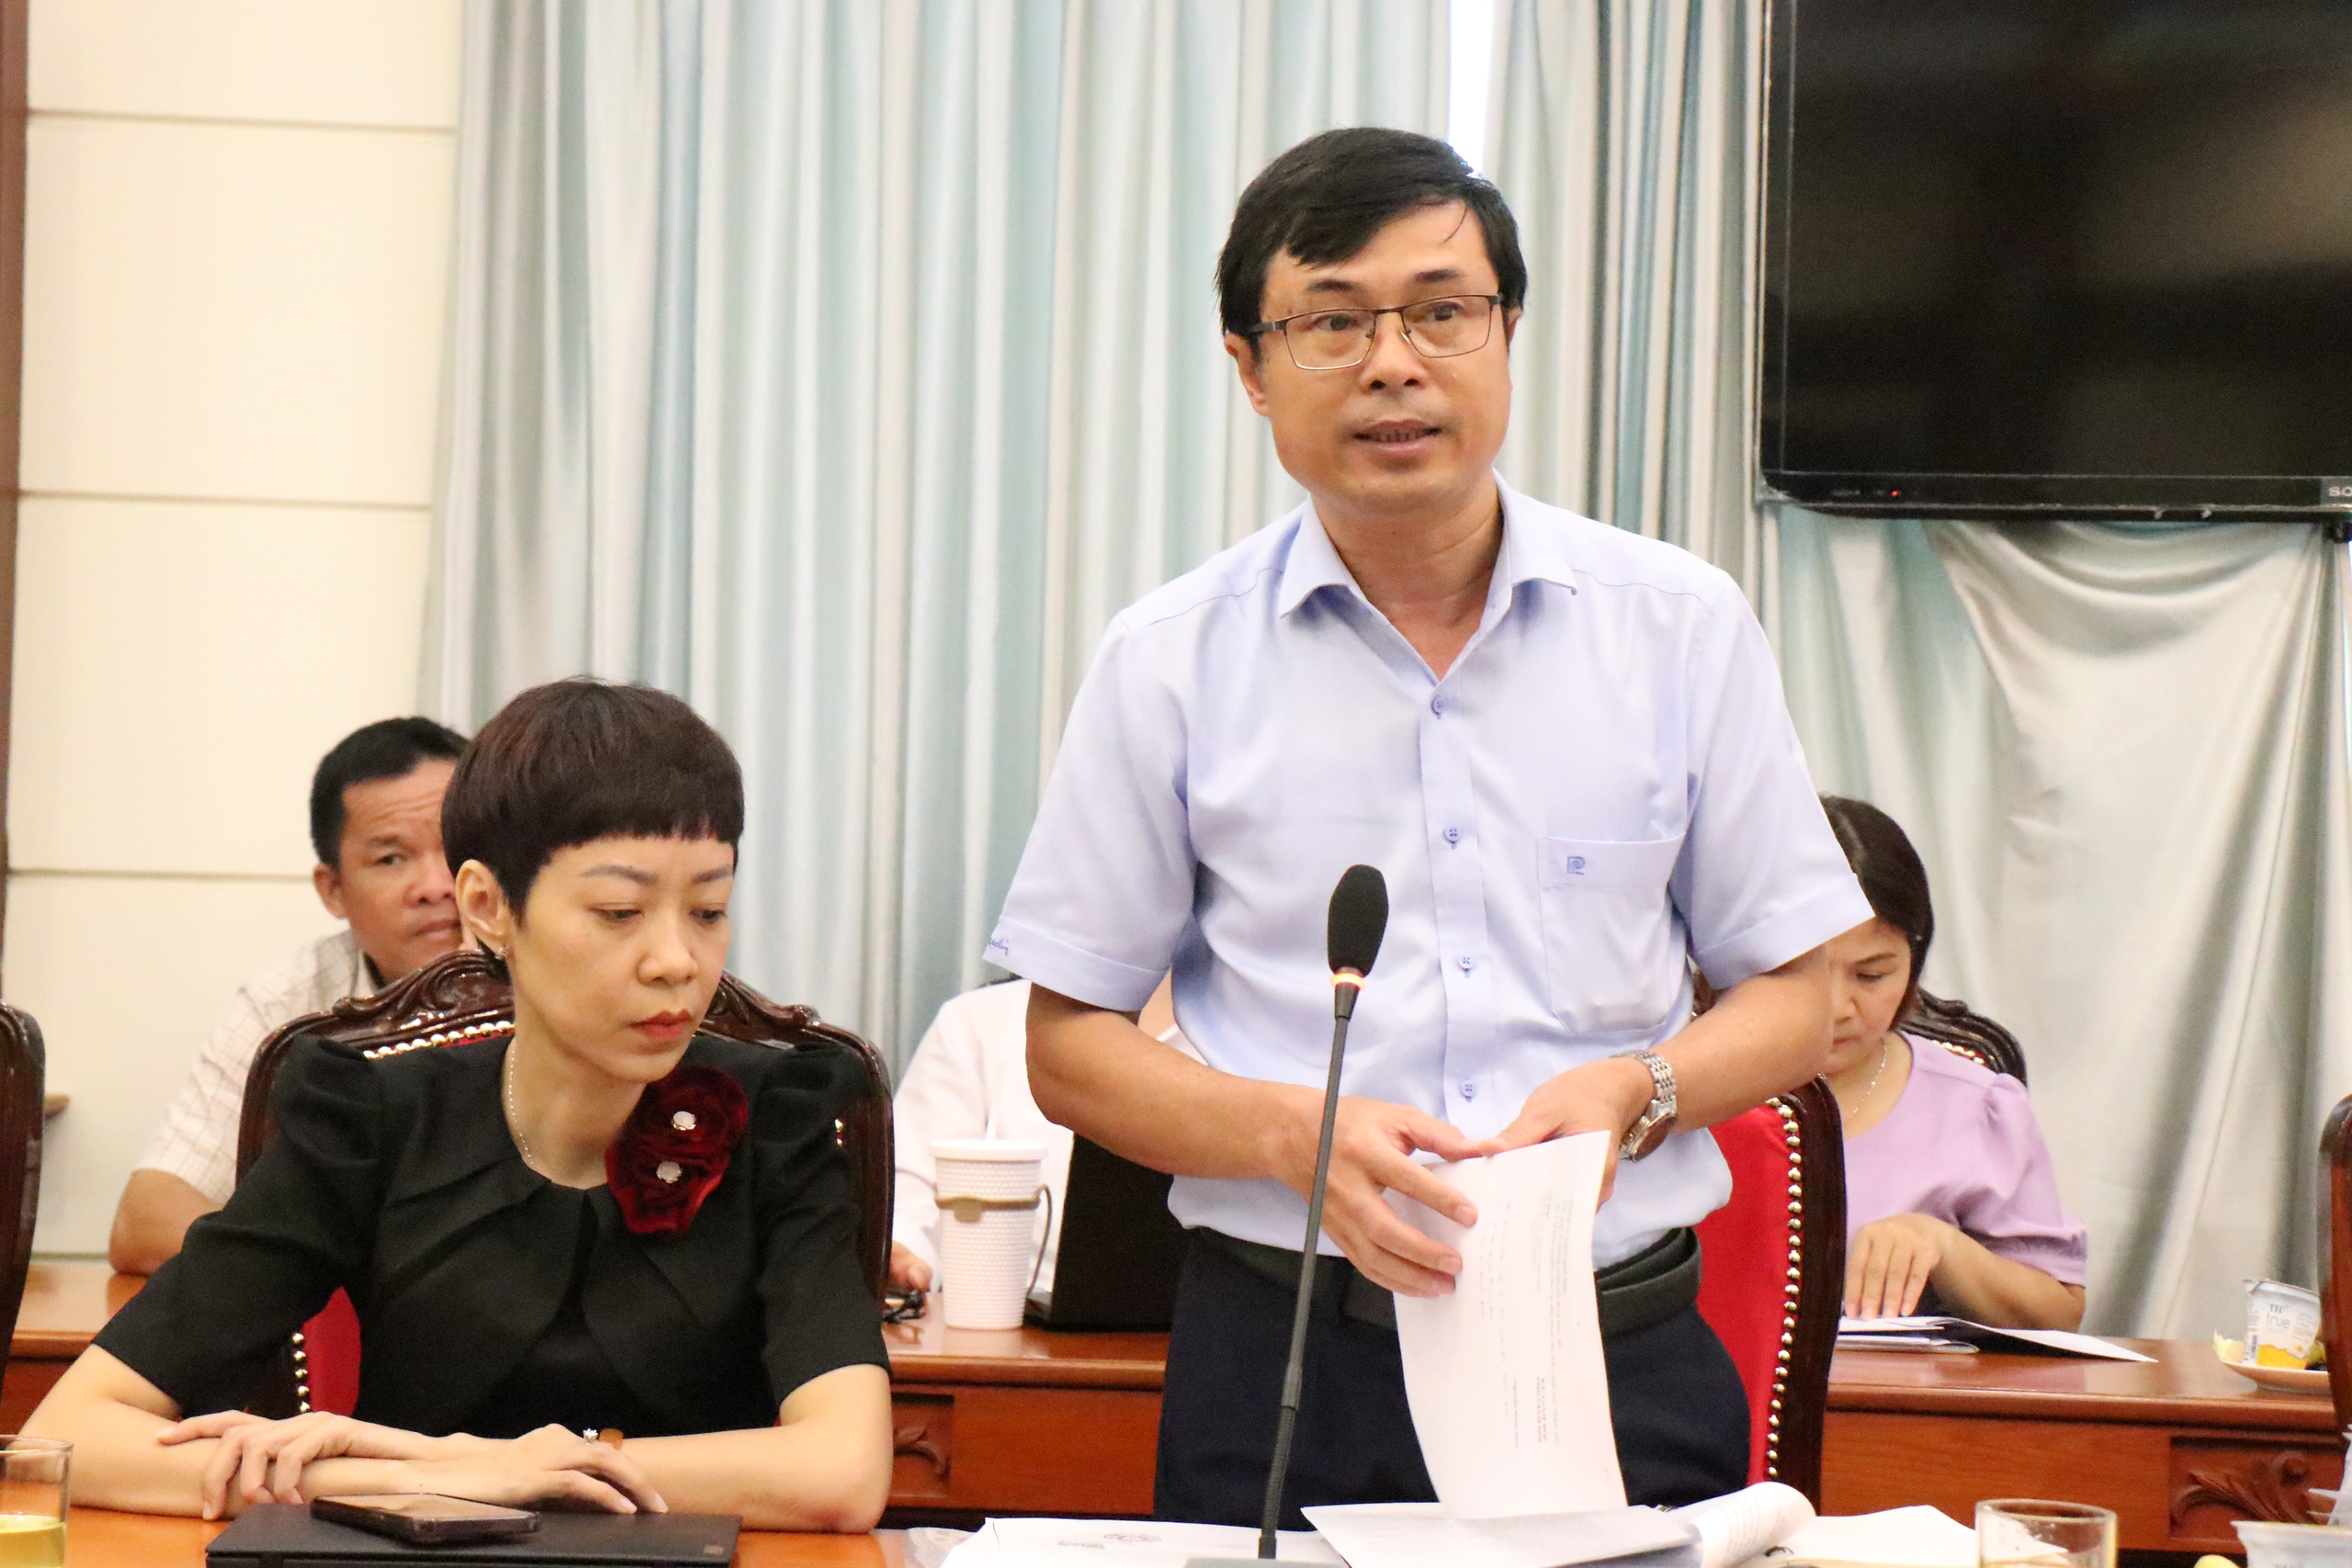 Ông Lê Ngọc Danh, Phó trưởng phòng Nghiệp vụ dược Sở Y tế TP.HCM kiến nghị thành lập cơ sở dự trữ quốc gia về thuốc hiếm